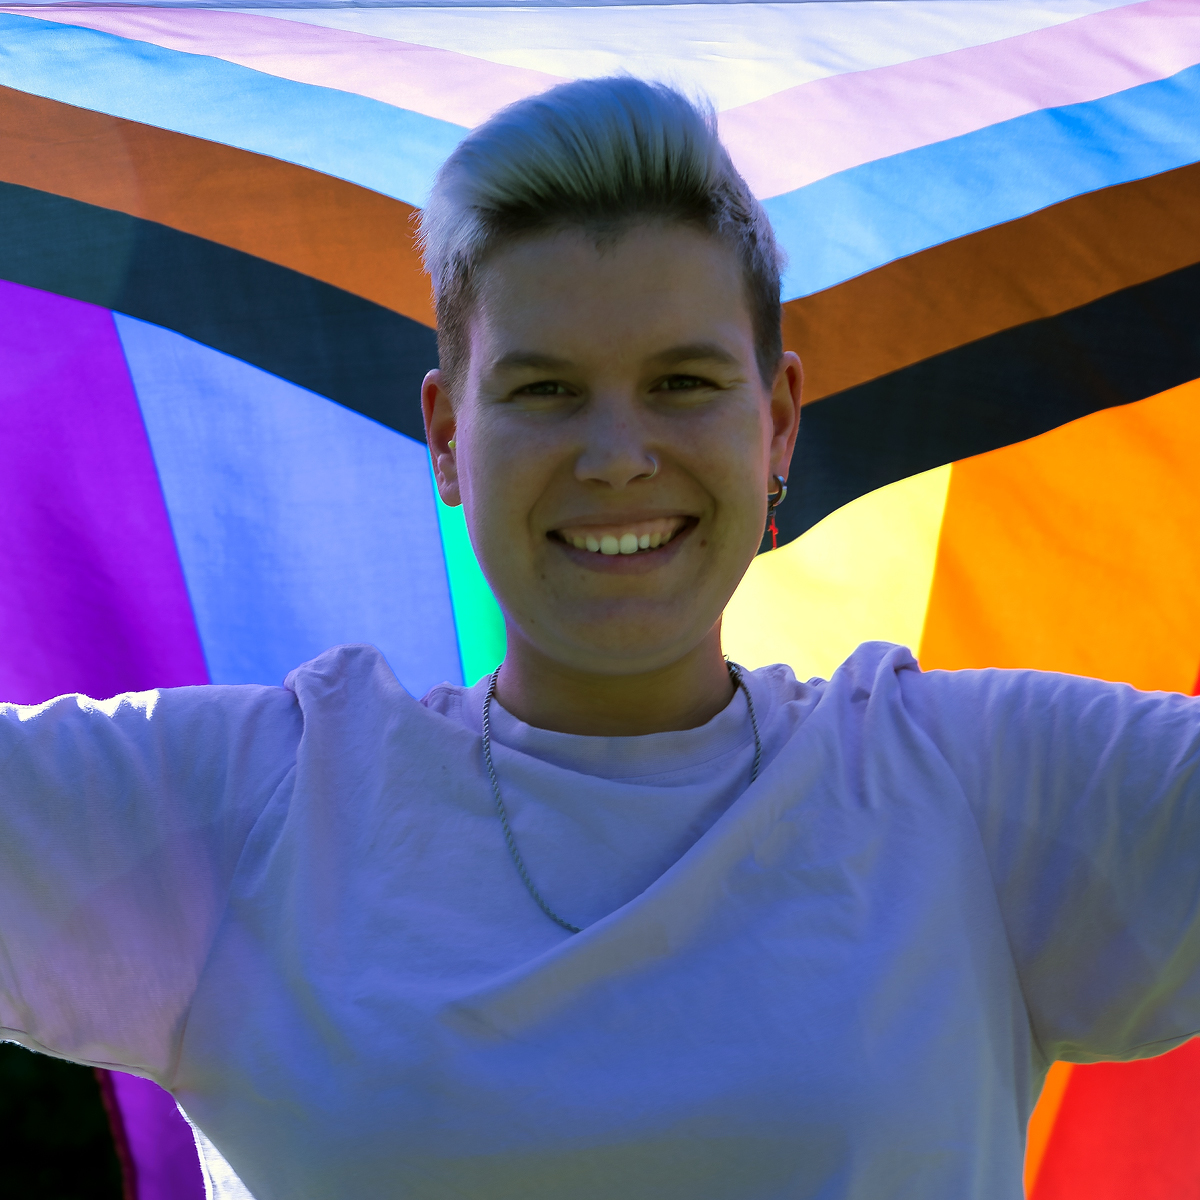 Portrait d'une personne non binaire, levant un drapeau représentant la communauté LGBTQ+.